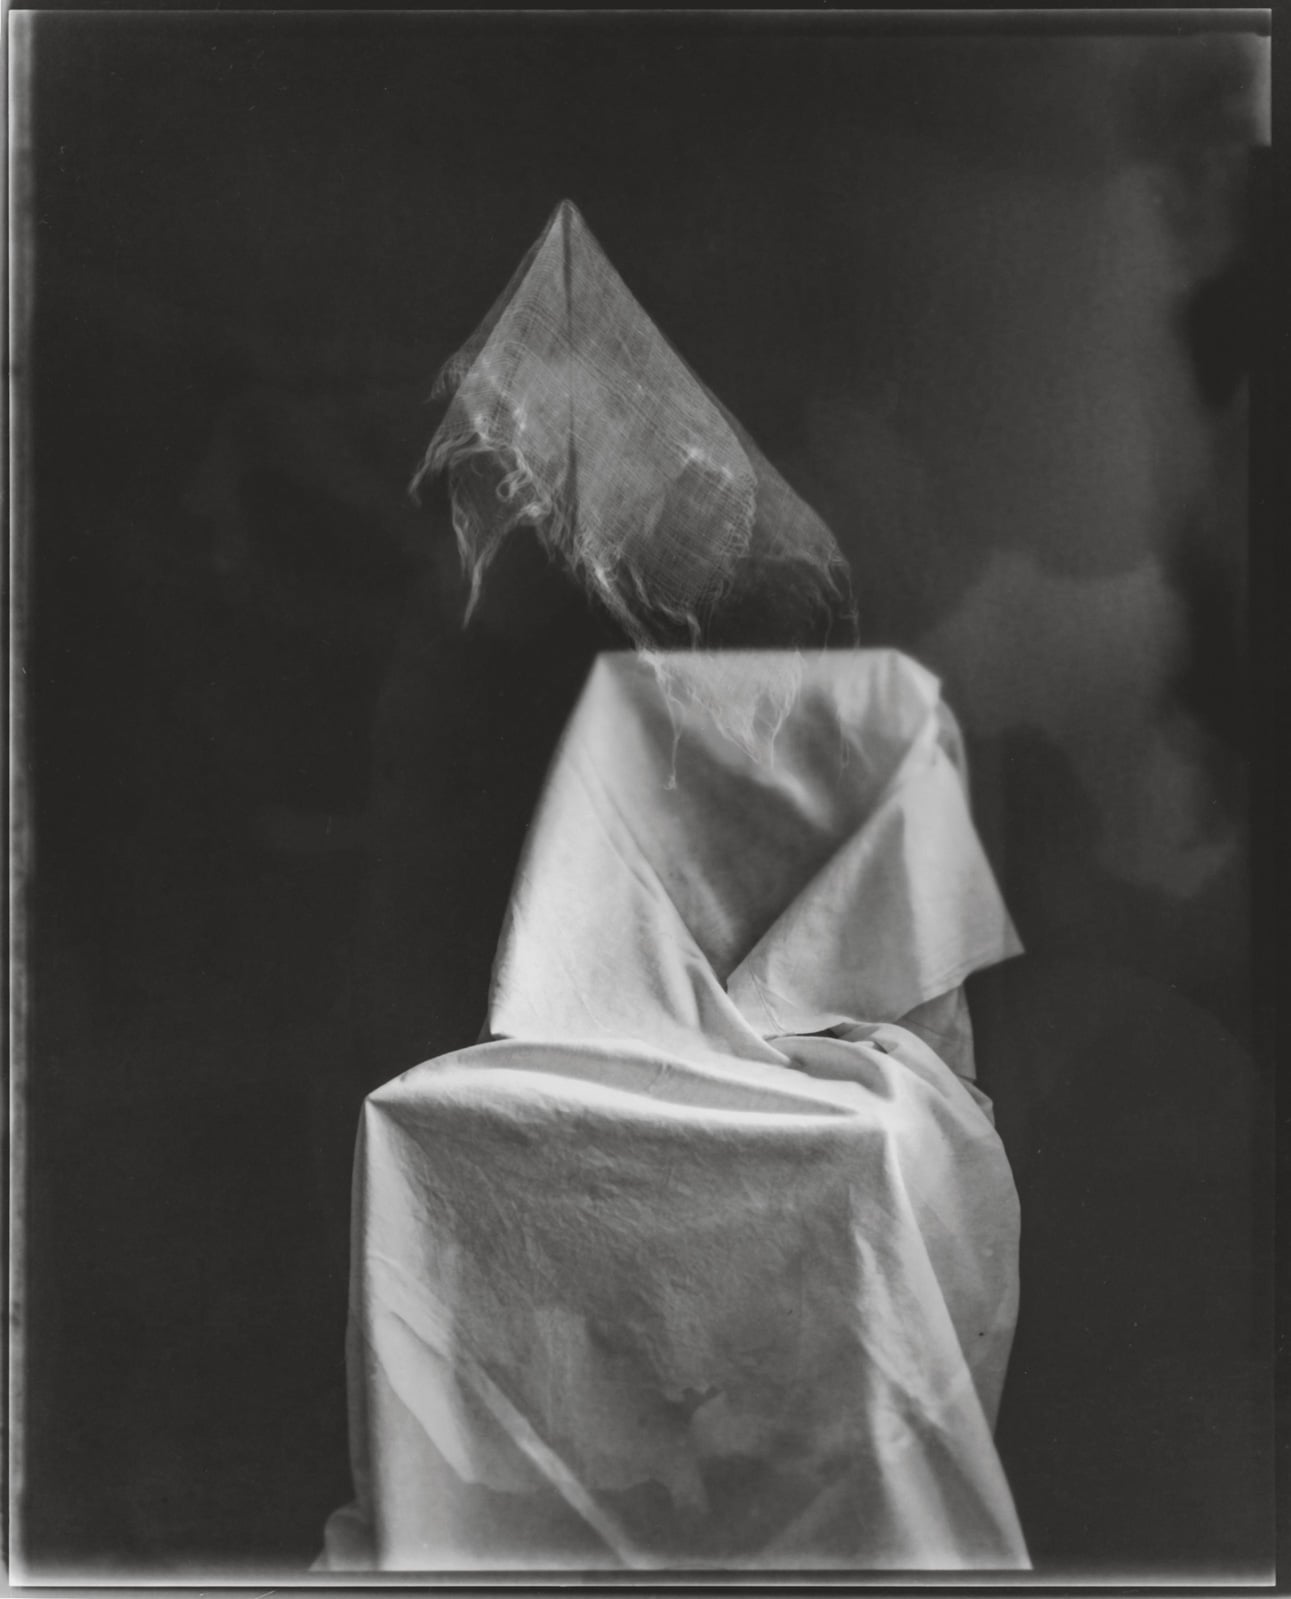 Tine Edel | Gespensterstuhl, 2016 | Belichtung eines 8 x10“ Papiernegativ, 24 x 30 cm analoges Fotopapier von Adox